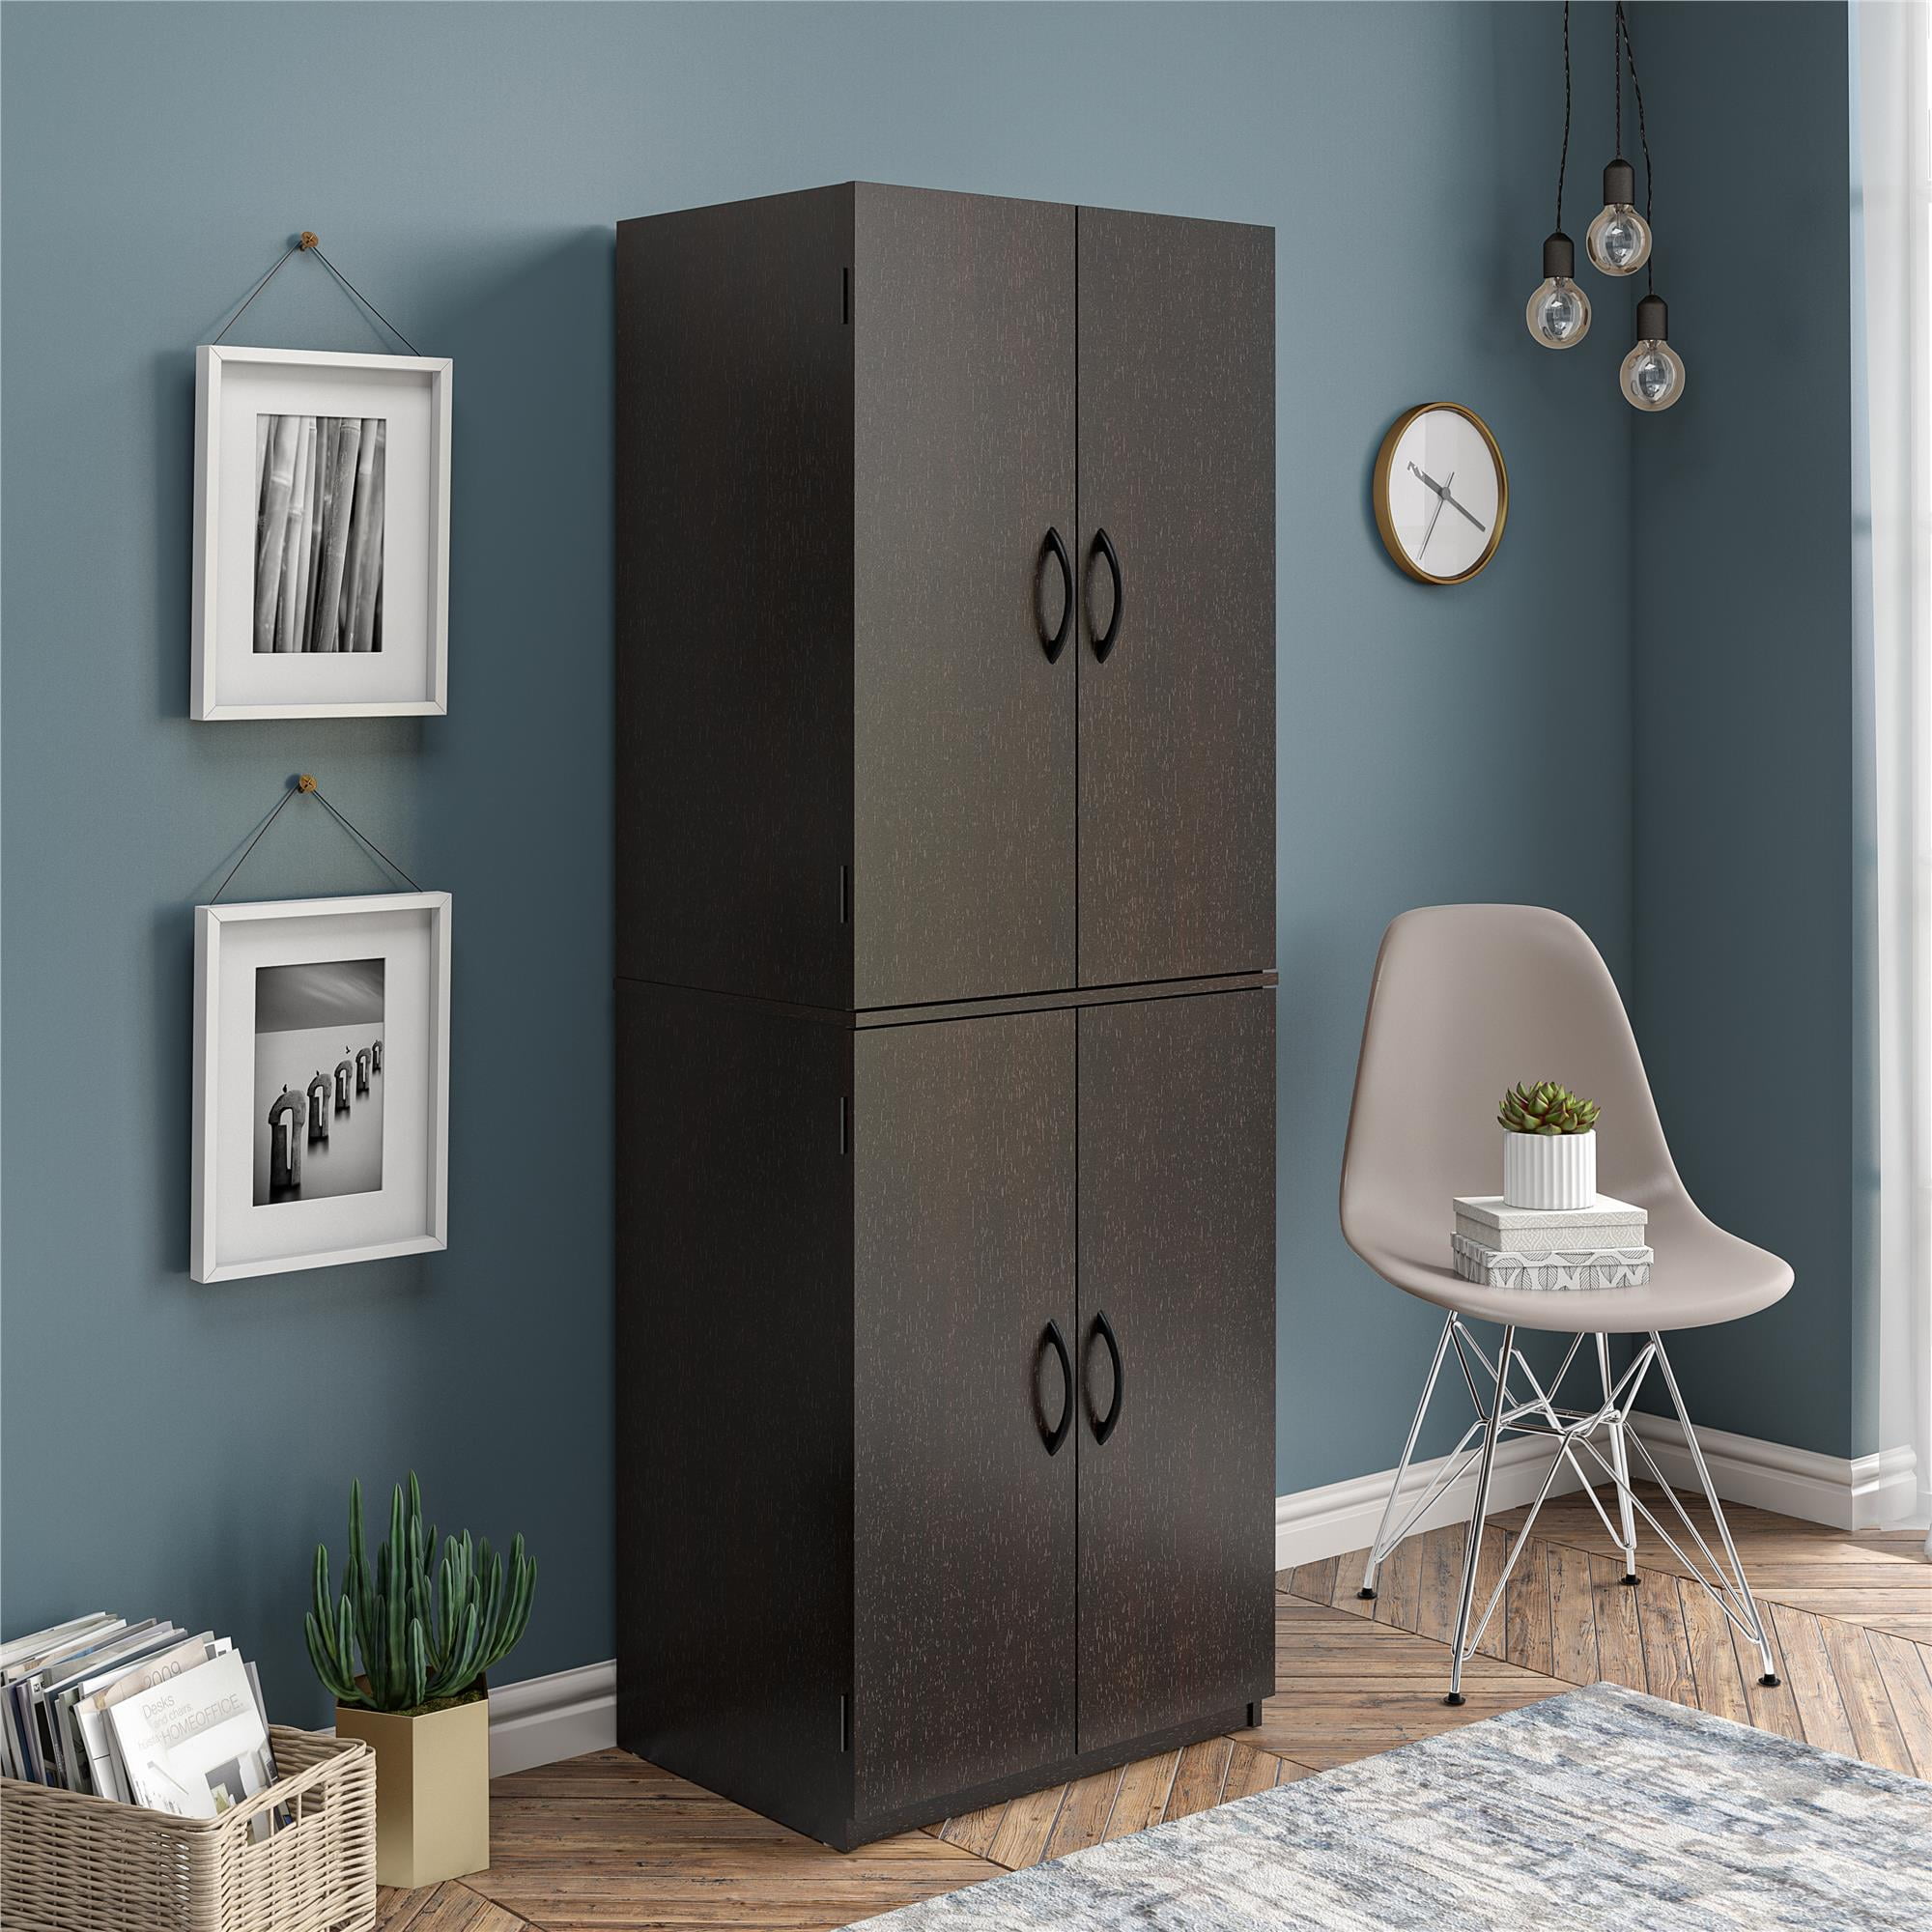 NEW Tall Cabinet Storage Kitchen Pantry Organizer Furniture Bathroom Cupboard 